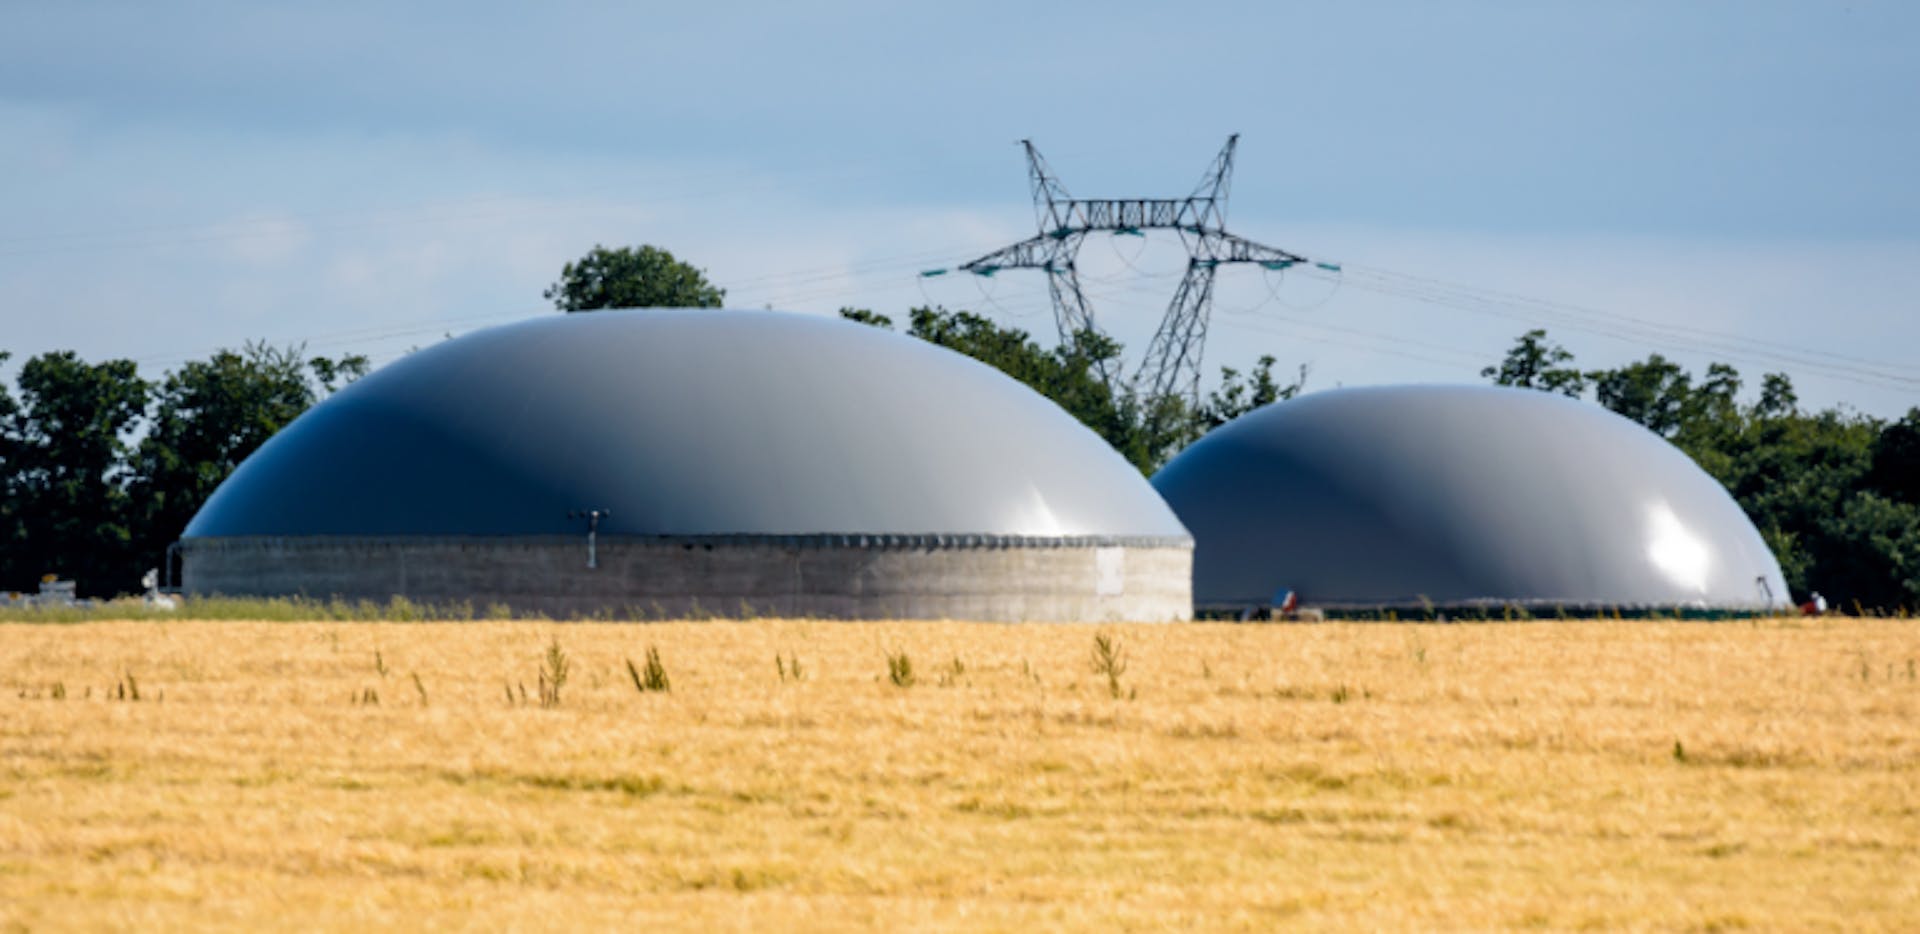 Unité de méthanisation qui produit du biogaz grâce à des déchets renouvelables.